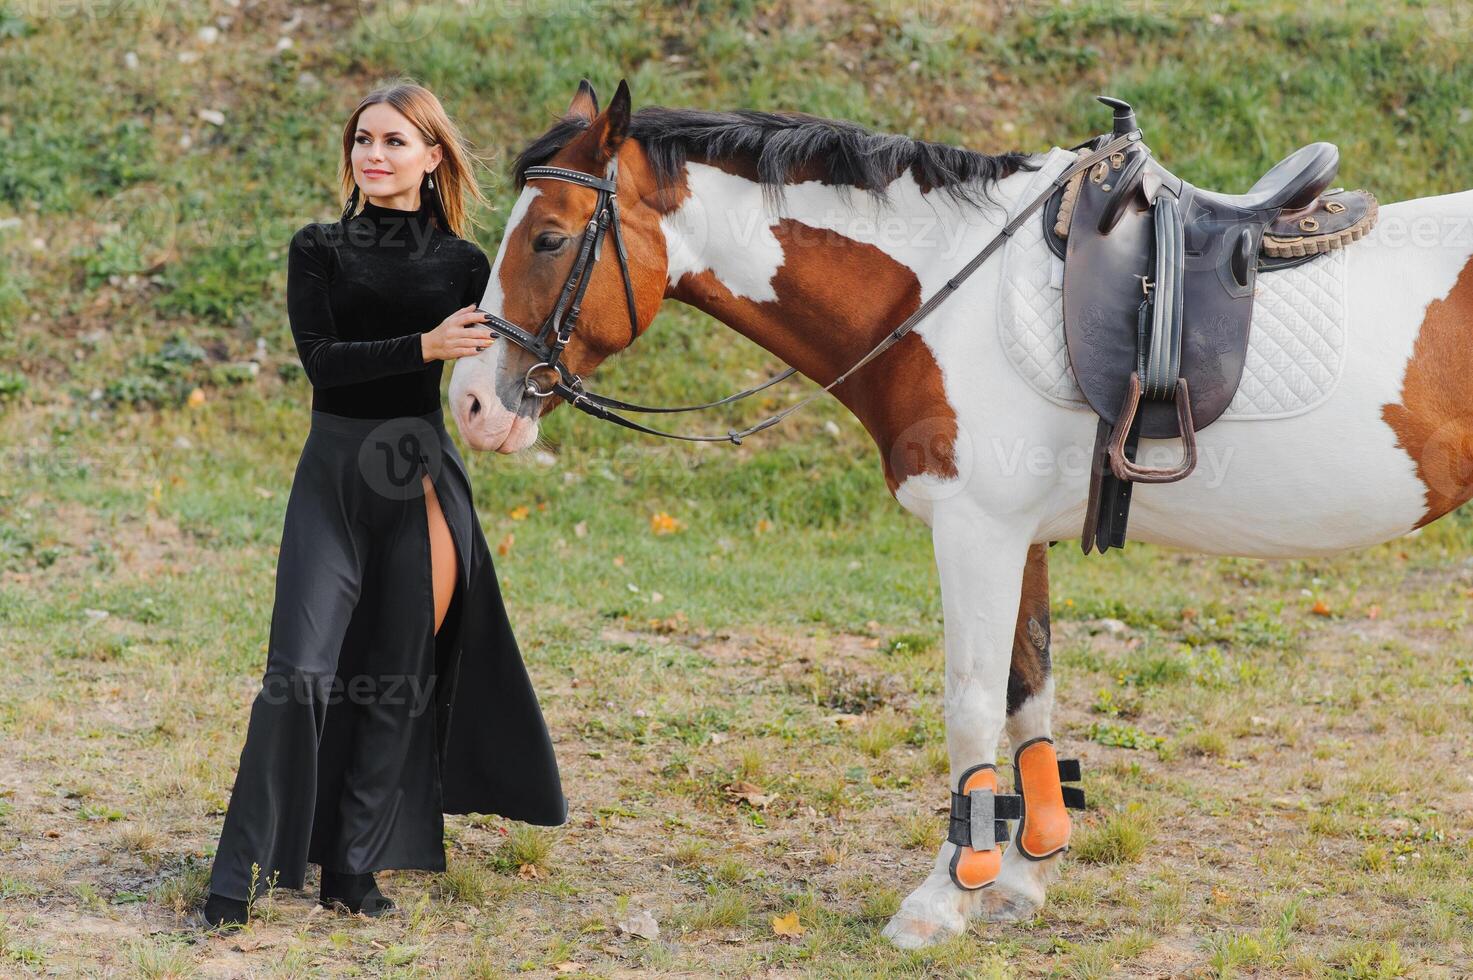 contento de moda joven mujer posando con un caballo en el playa foto